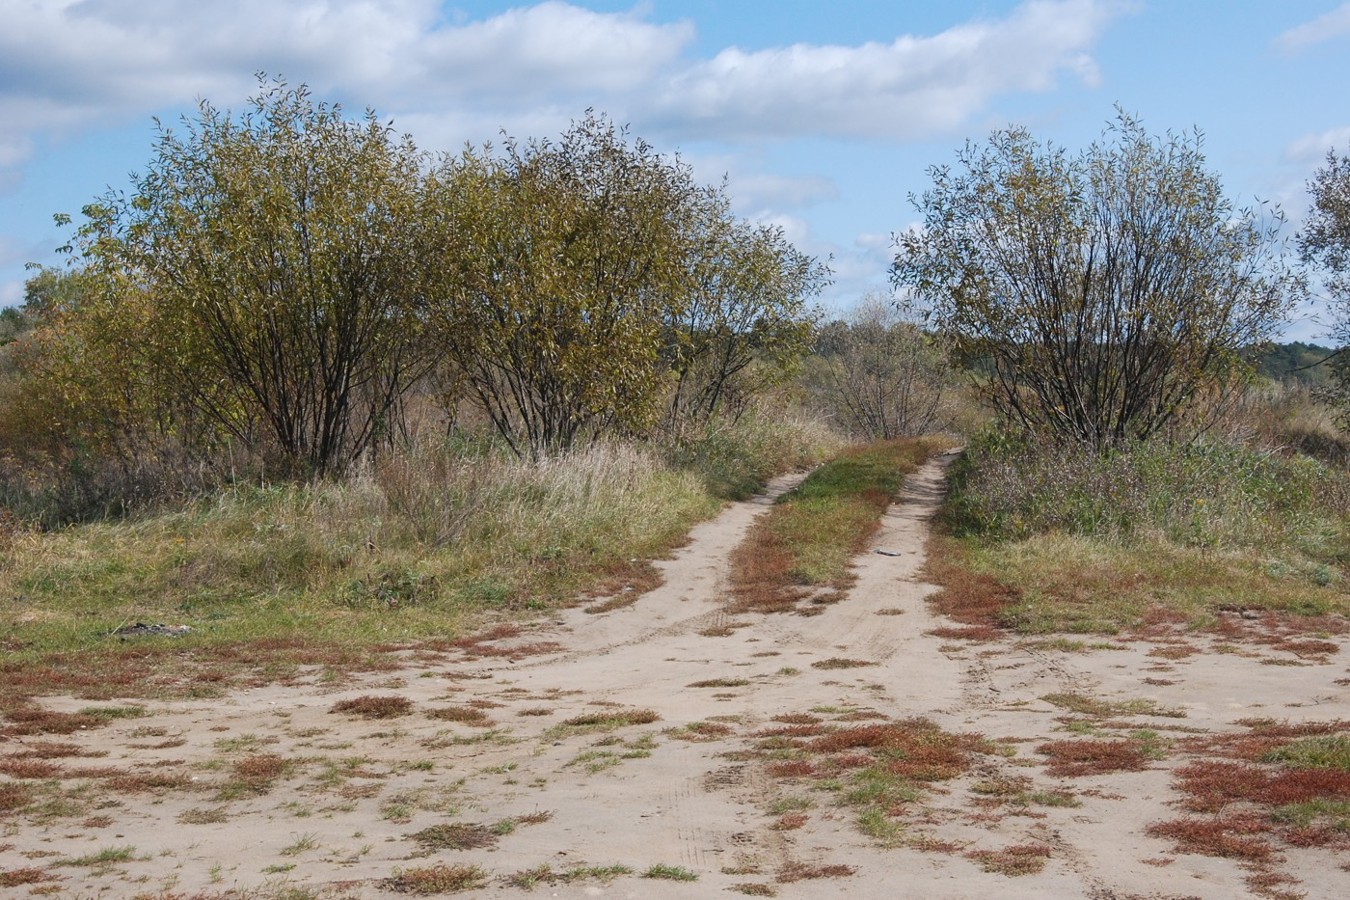 Соколова Пустынь, image of landscape/habitat.